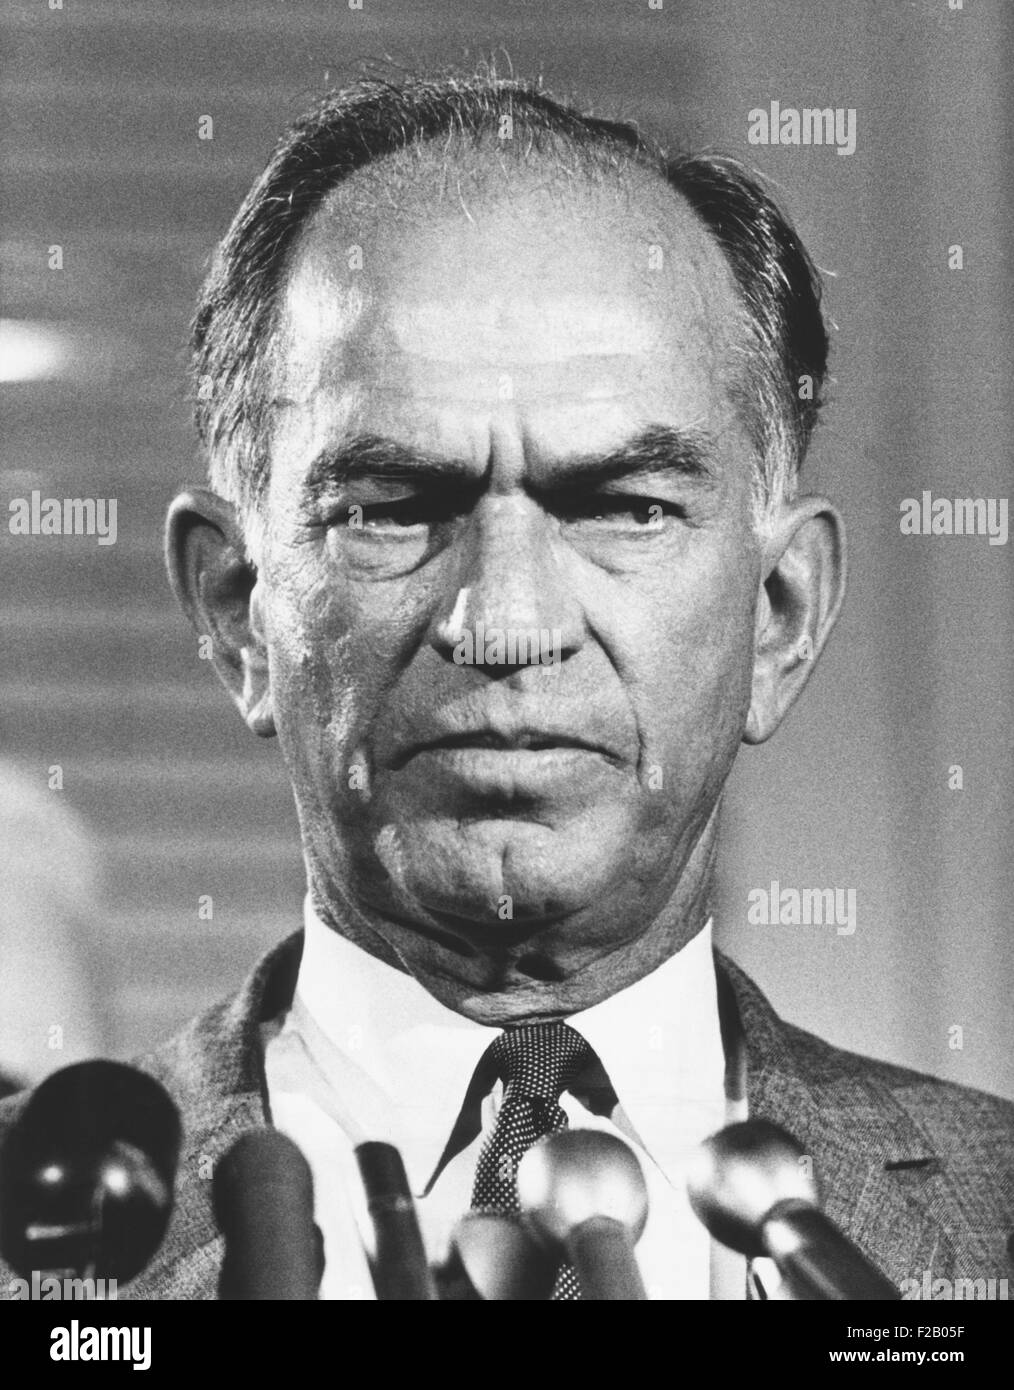 Le sénateur J. William Fulbright, le sénateur de l'Arkansas à long terme de cinq à partir de 1945-1974. La pensée indépendante le sénateur opposé maccarthysme Banque D'Images